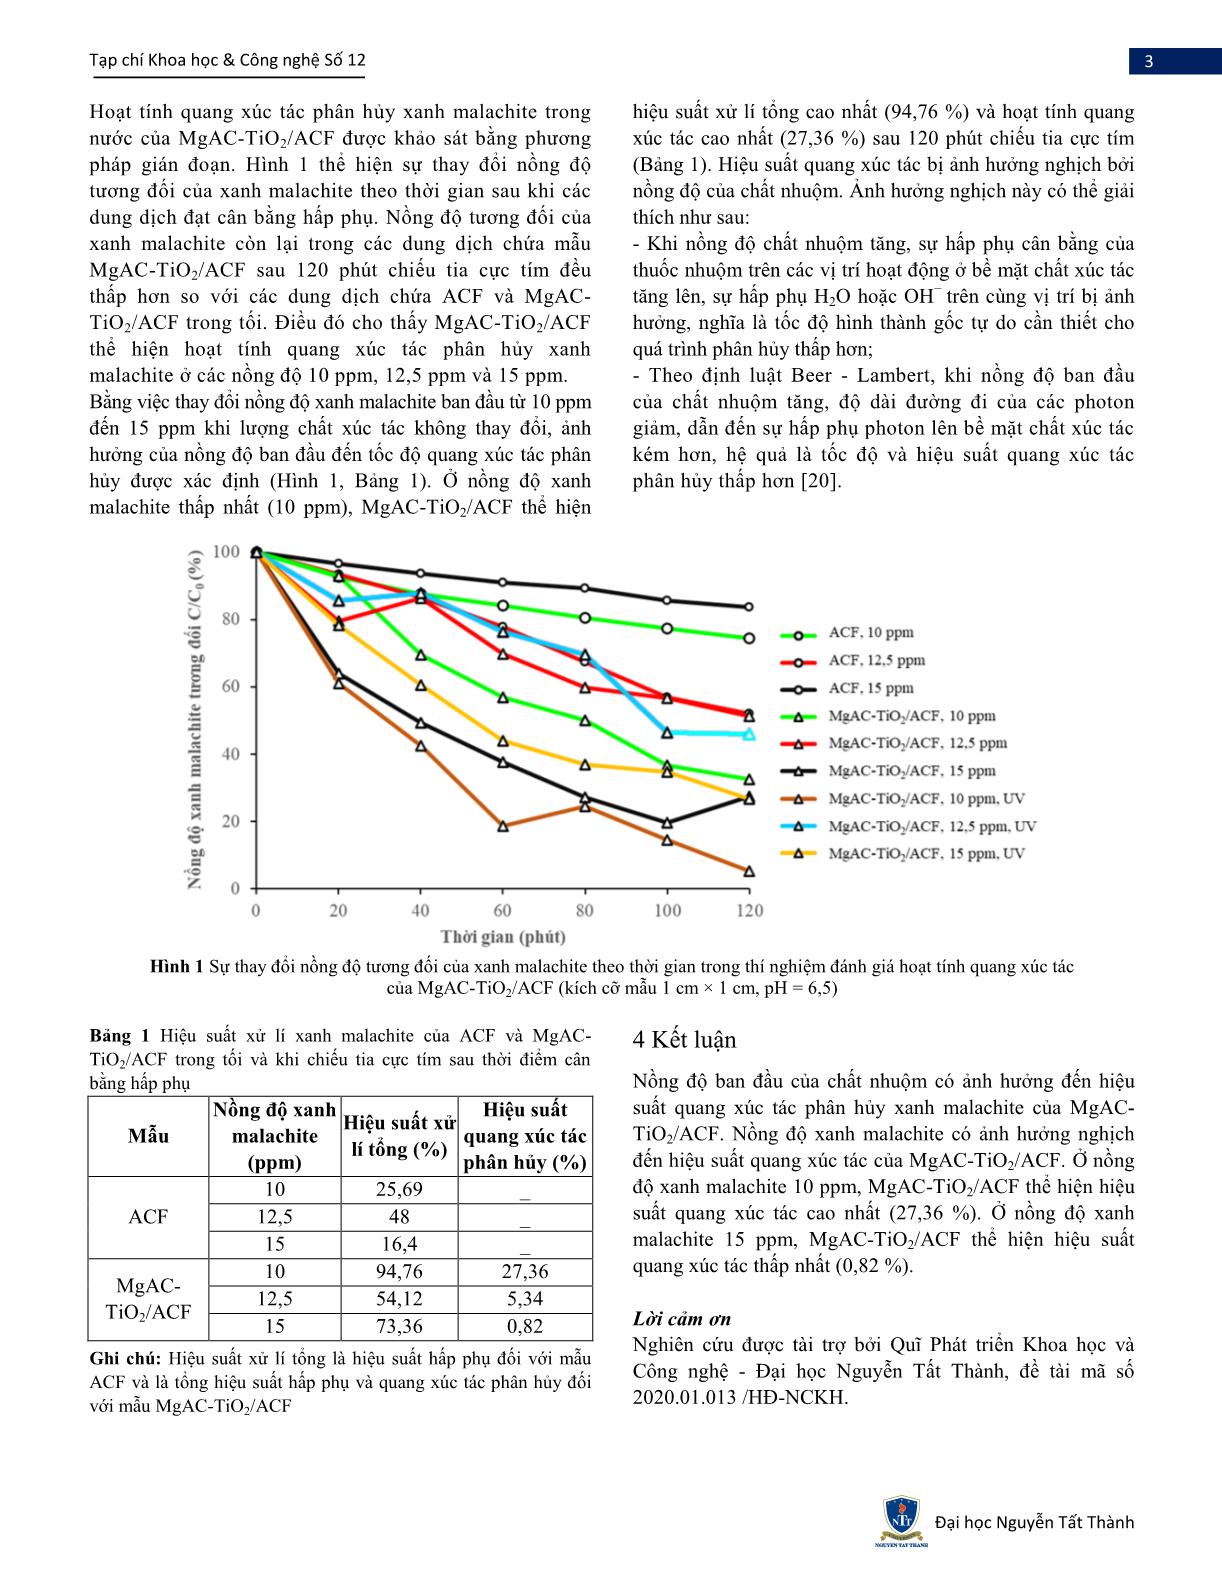 Đánh giá hoạt tính quang xúc tác phân hủy của sợi than hoạt tính phủ magie aminoclay-Titan dioxit (MgAC-TiO₂/ACF) đối với xanh malachite trang 3